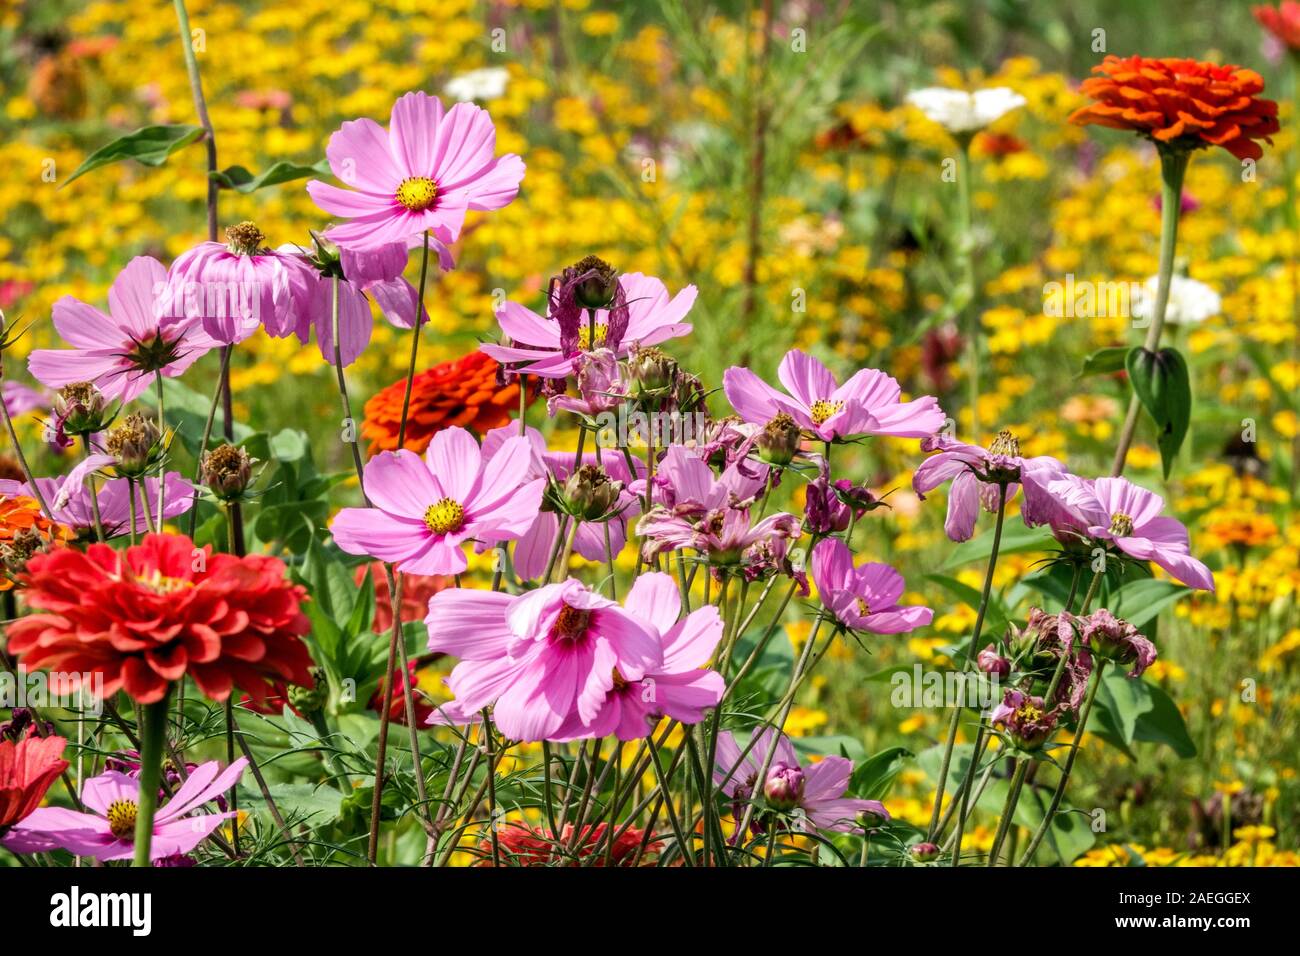 Garten Grenze Blumen mehrfarbig Bett Sommer Blume Grenze Kosmos Stockfoto